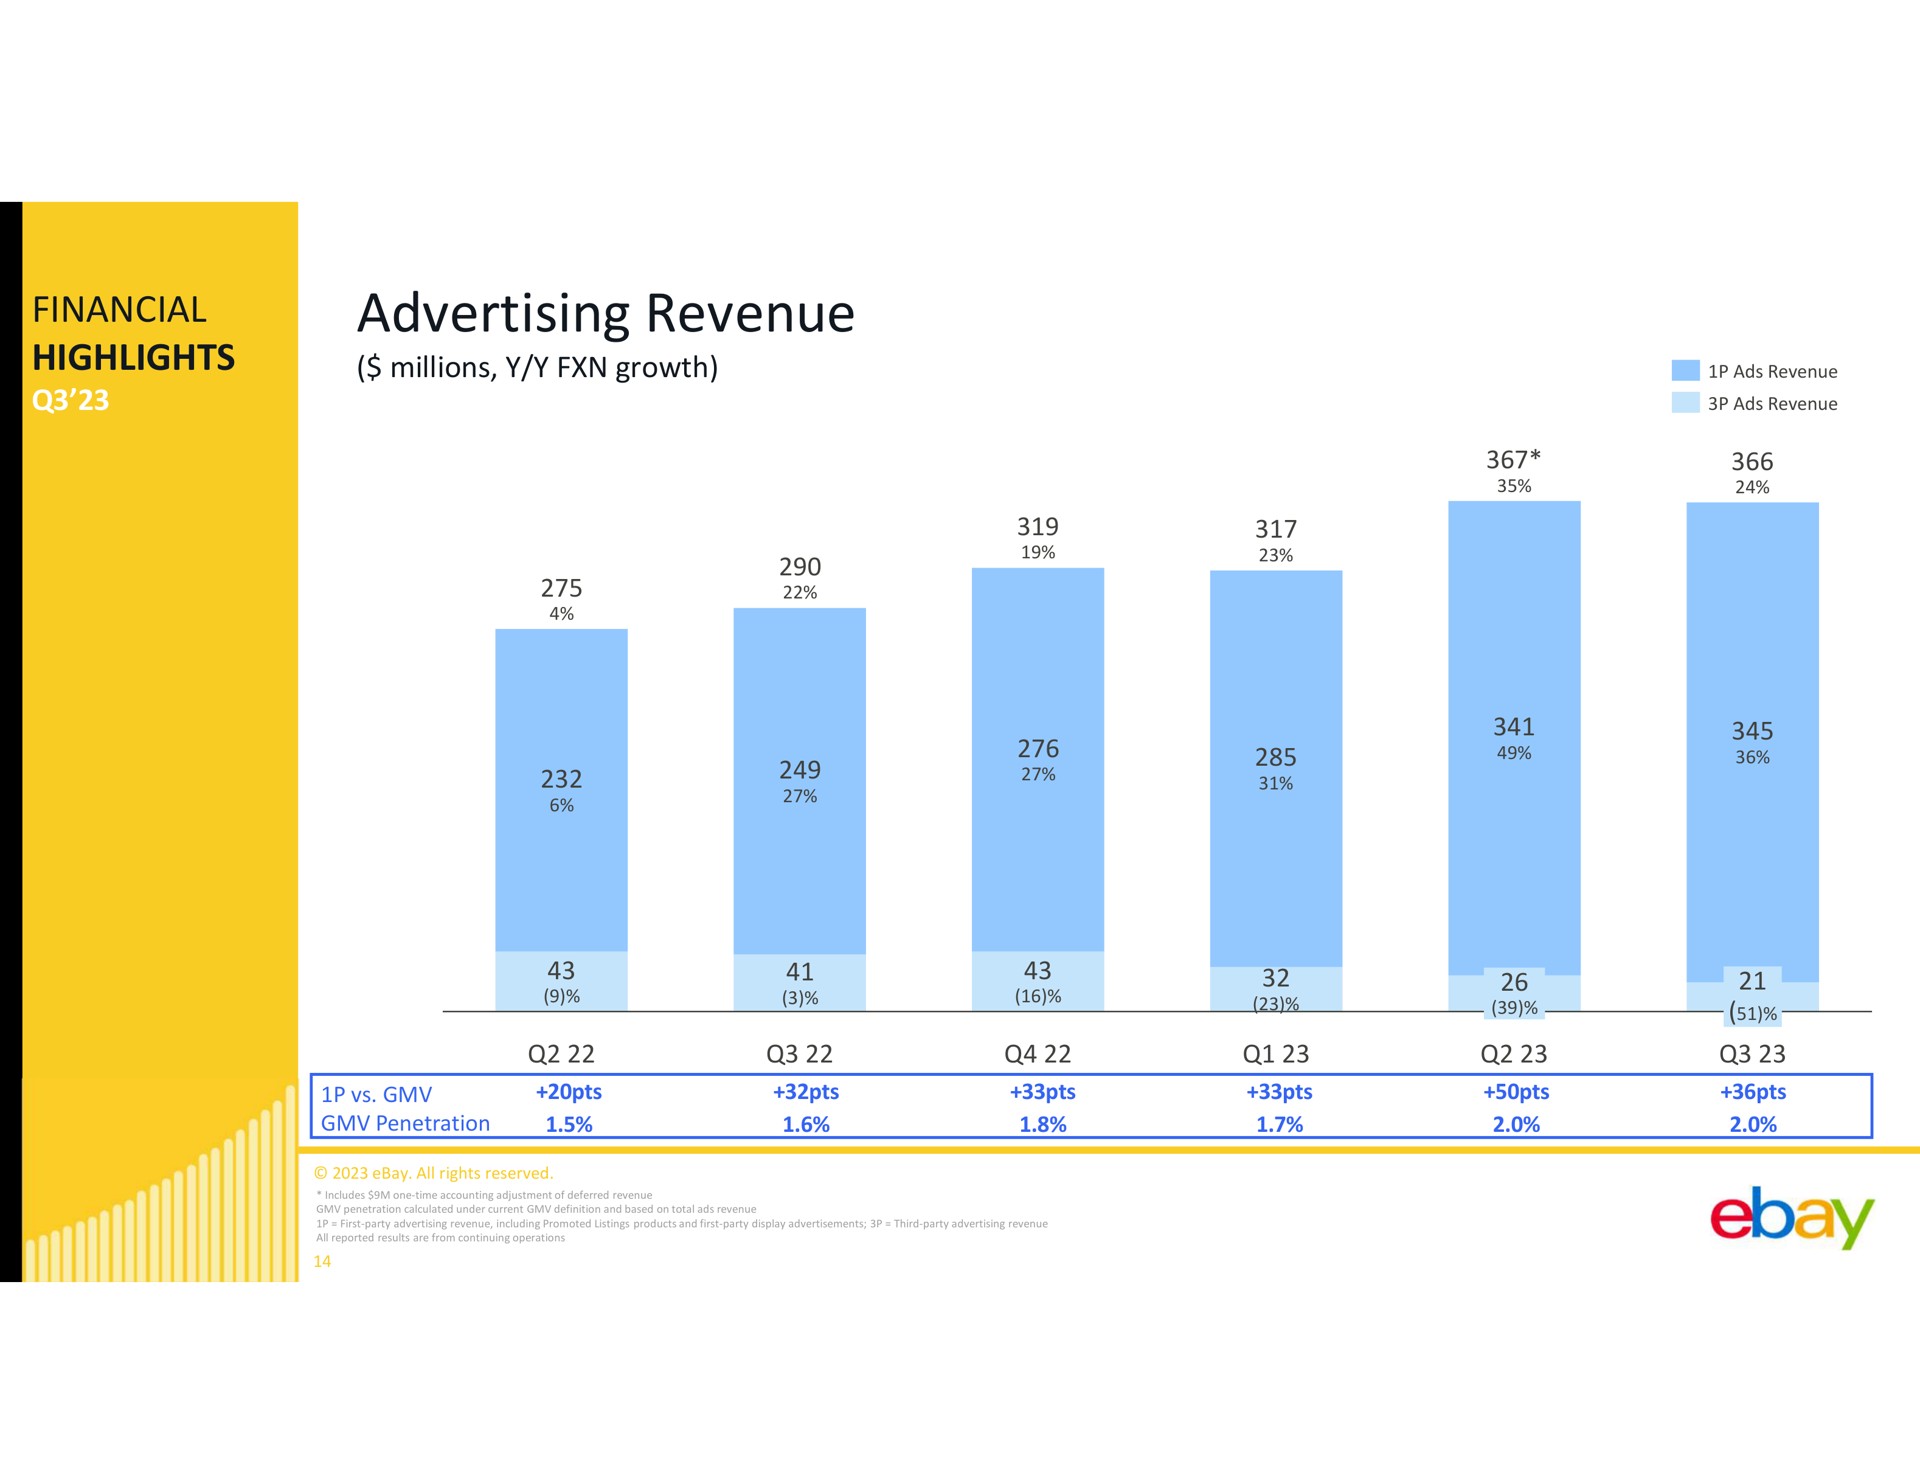 financial highlights advertising revenue | eBay